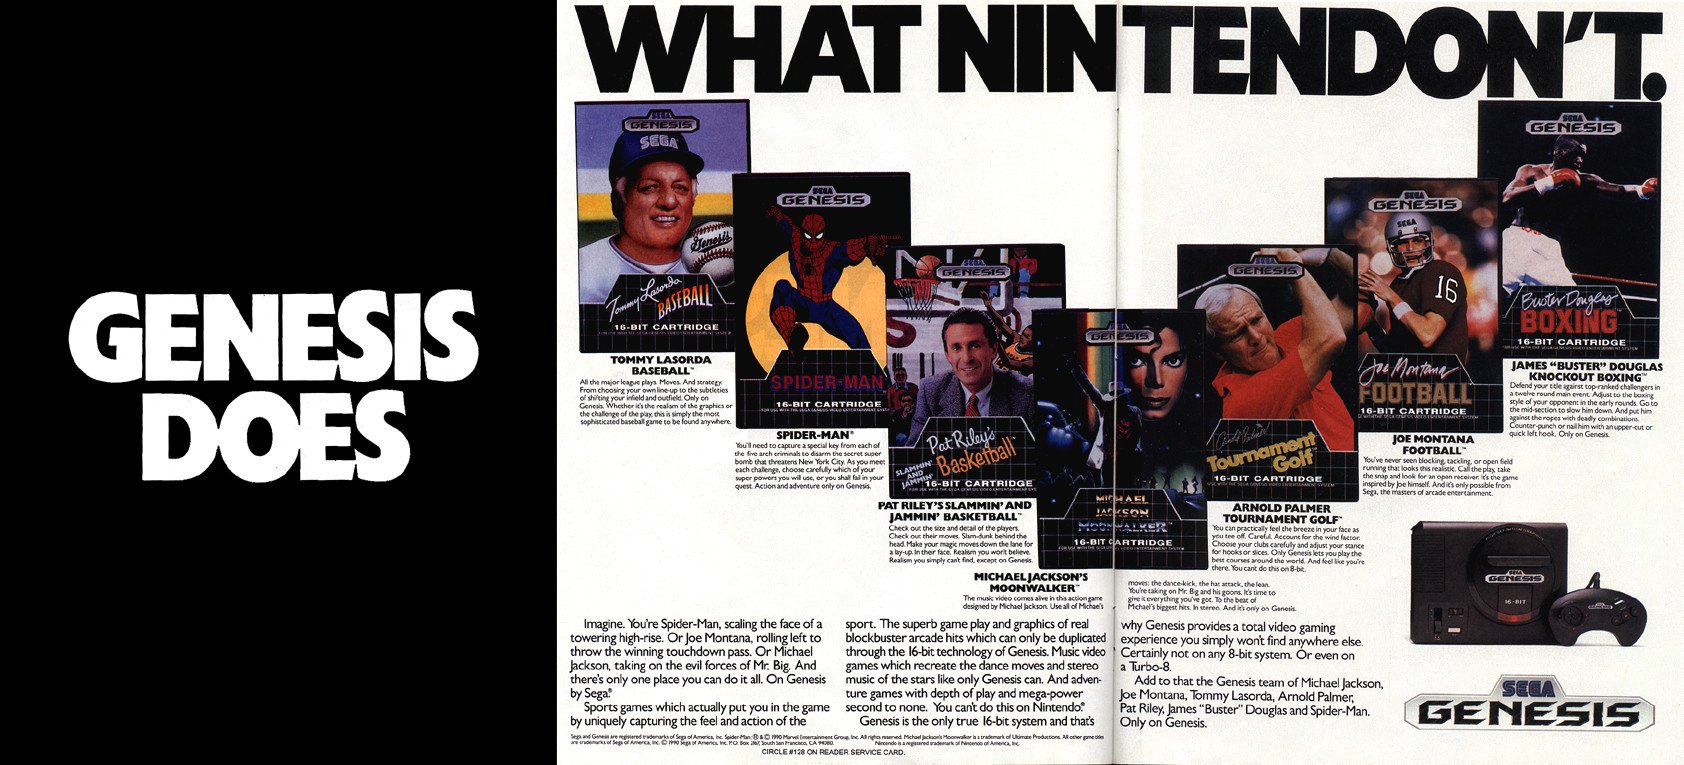 A SEGA fez uma agressiva campanha de marketing contra a Nintendo nos anos 1990